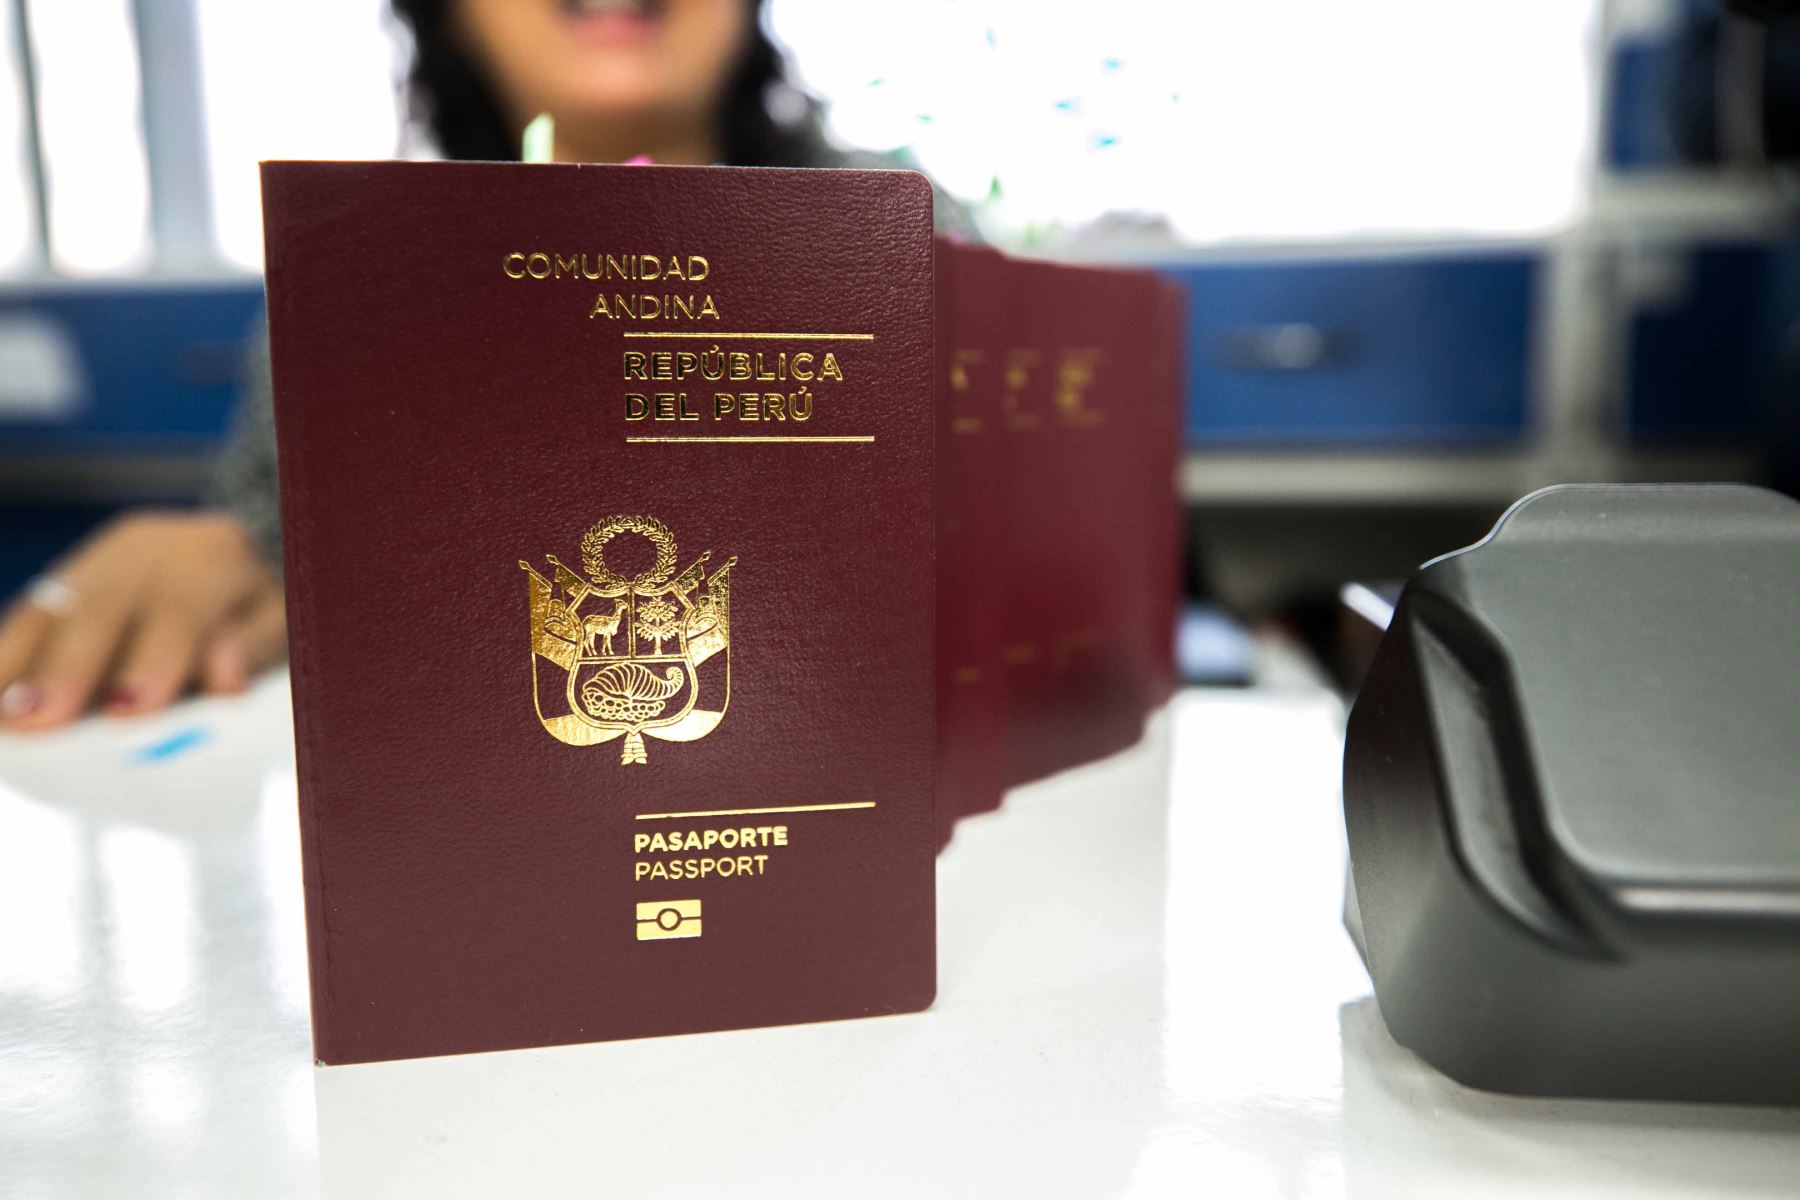 Migraciones: lote de 546 mil pasaportes llegará la primera quincena de mayo y se incrementarán número de citas